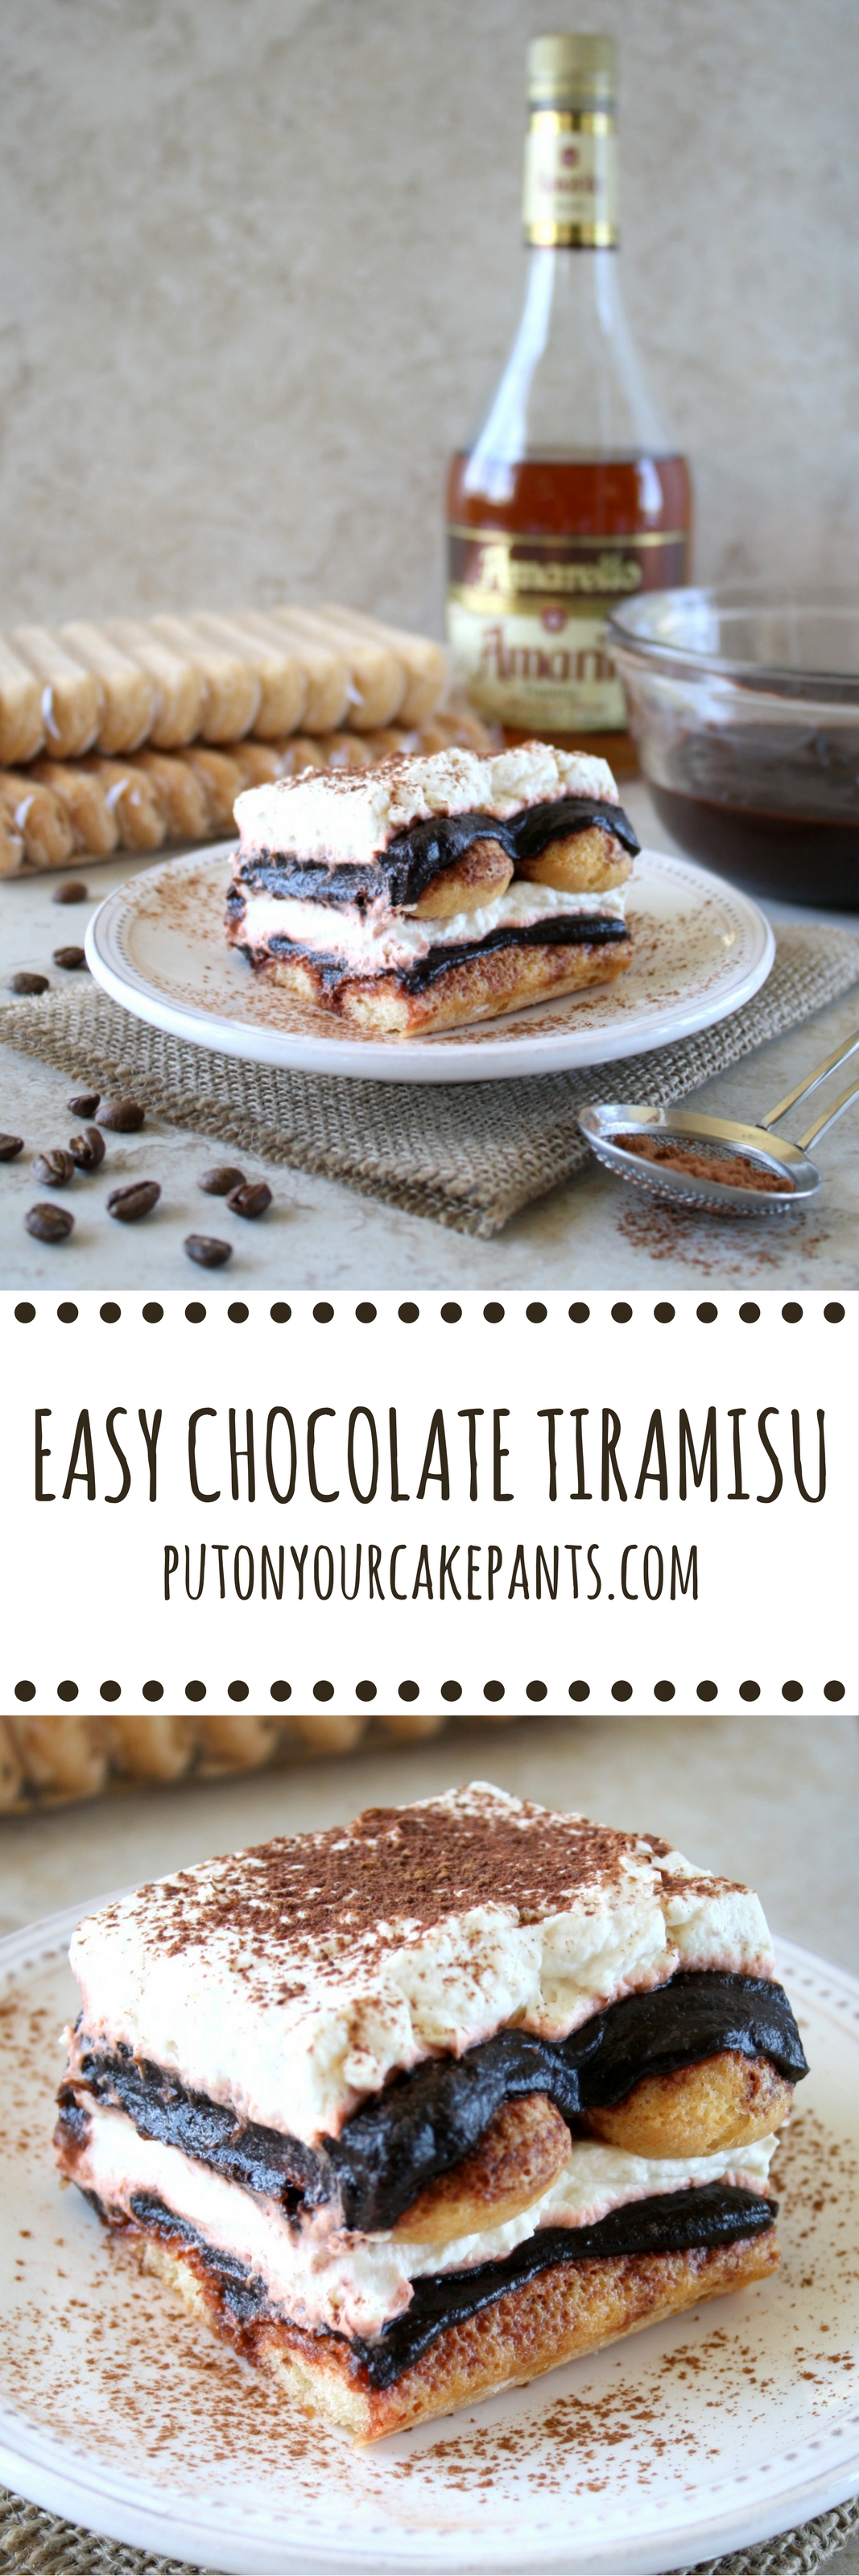 easy chocolate tiramisu